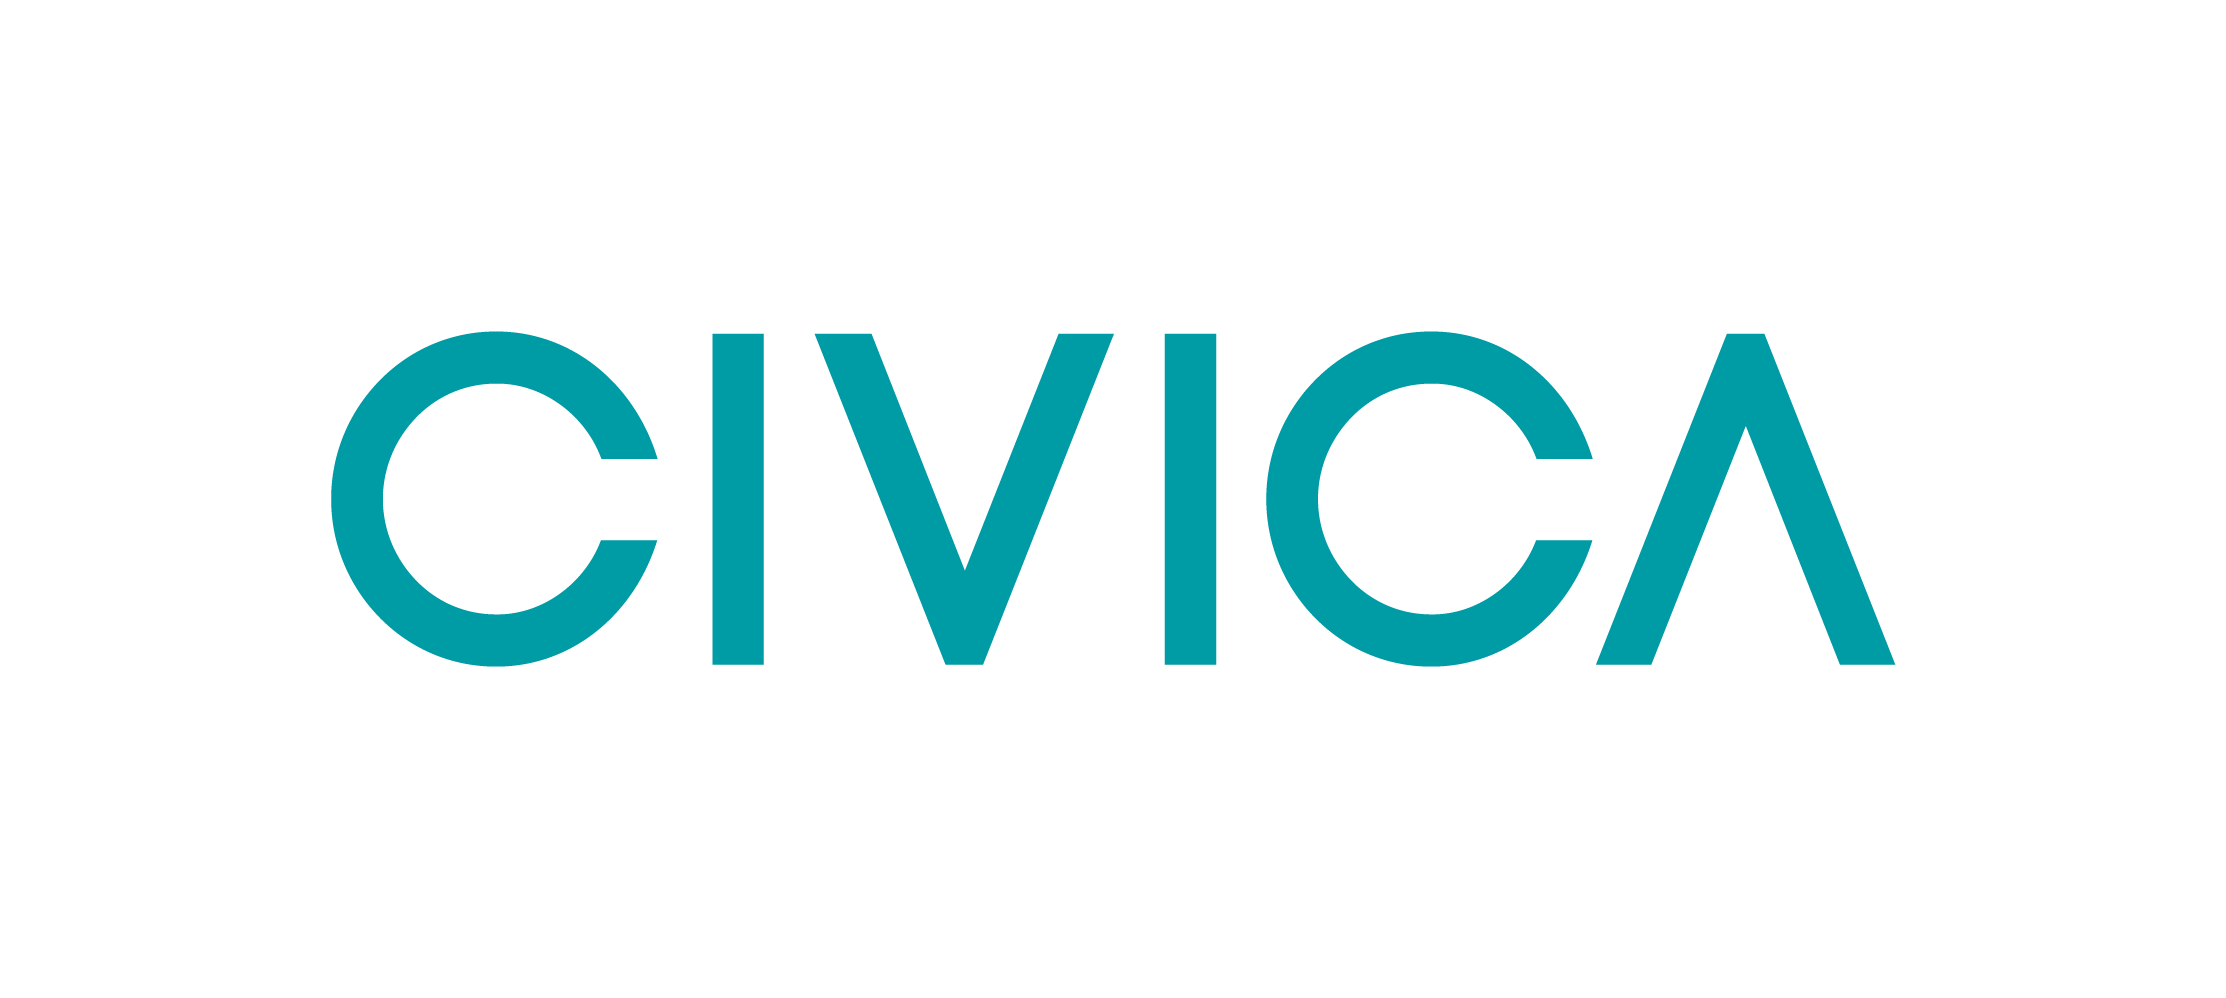 Civica our main sponsor